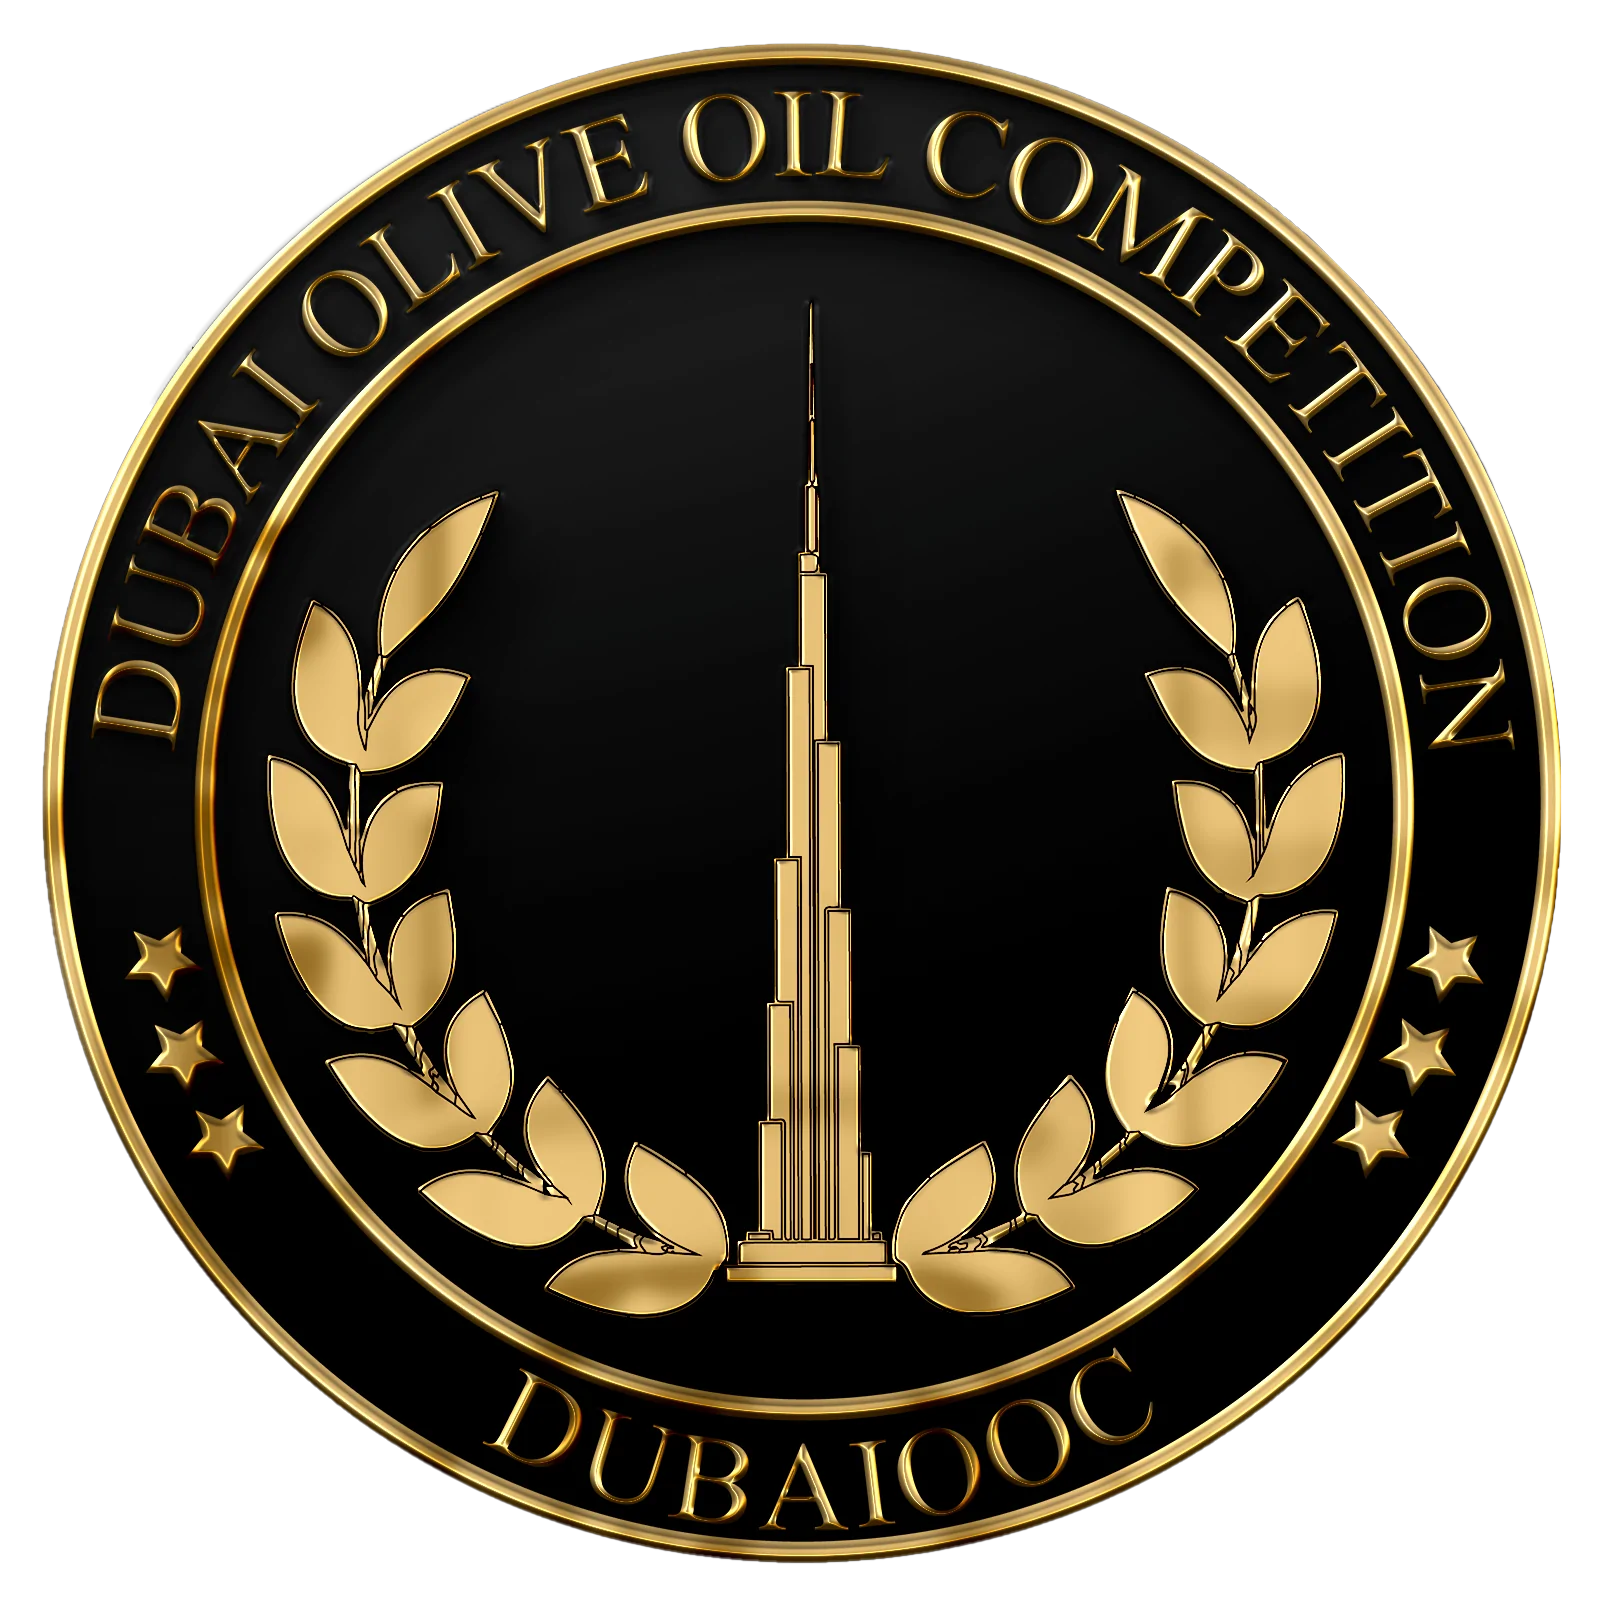 DUBAIOOC – Gold Medal Award 2022